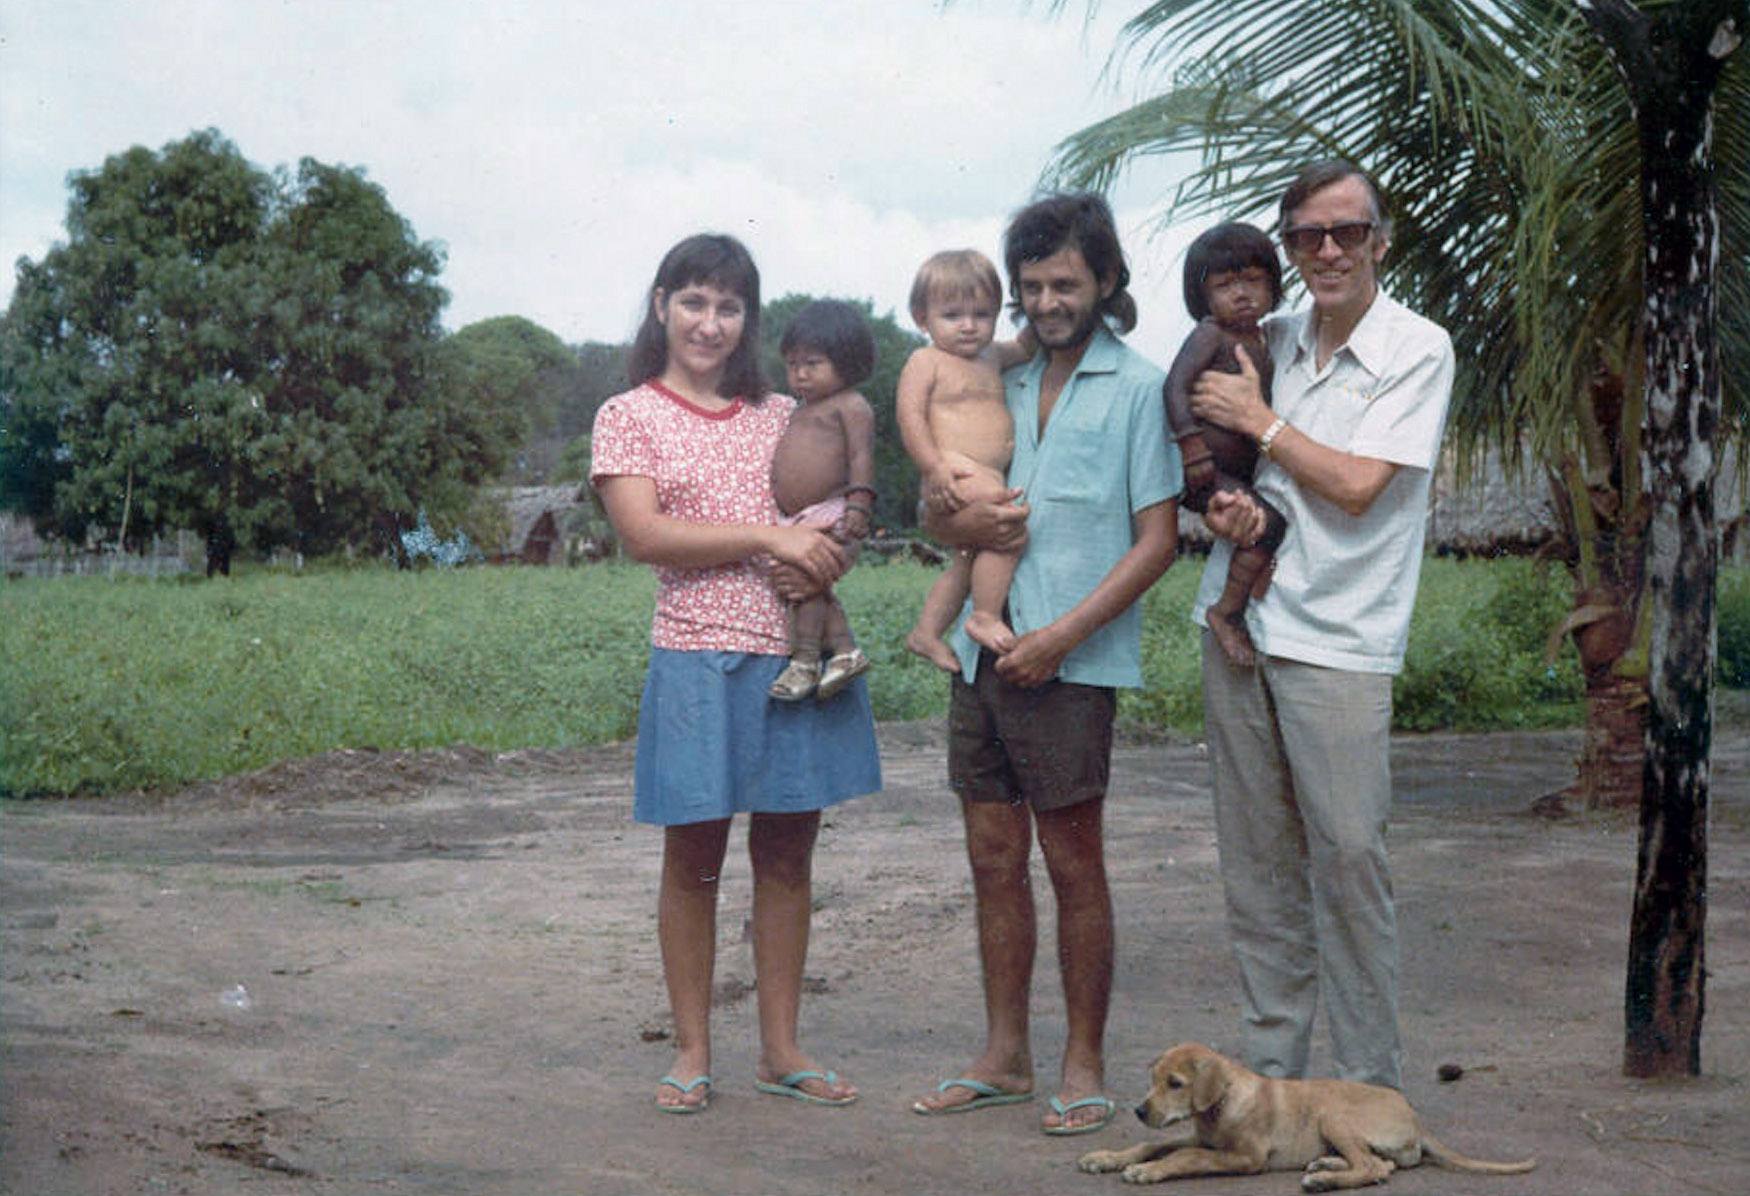 Pedro Casaldáliga com a autora deste texto, Eunice, seu marido Luiz e seu filho André logo após chegarem à comunidade indígena Apyãwa.